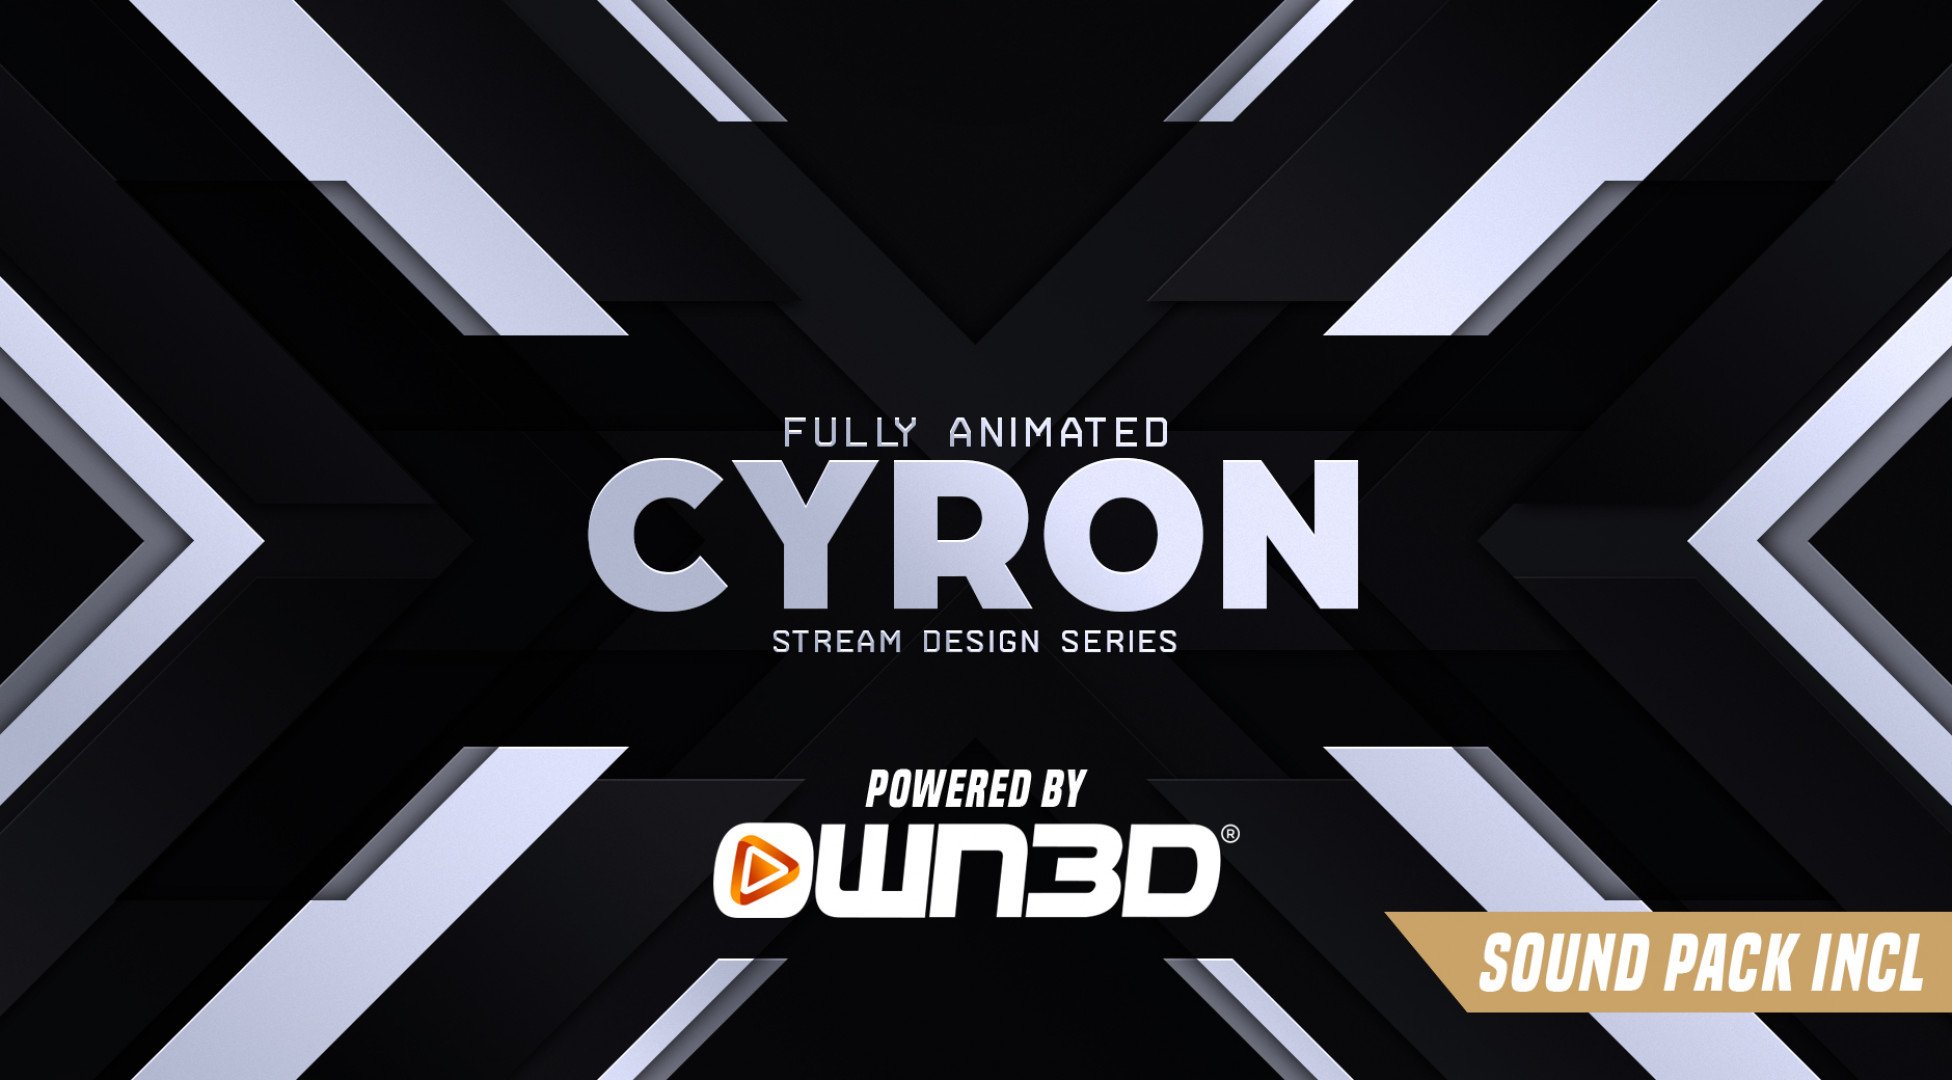 Cyron